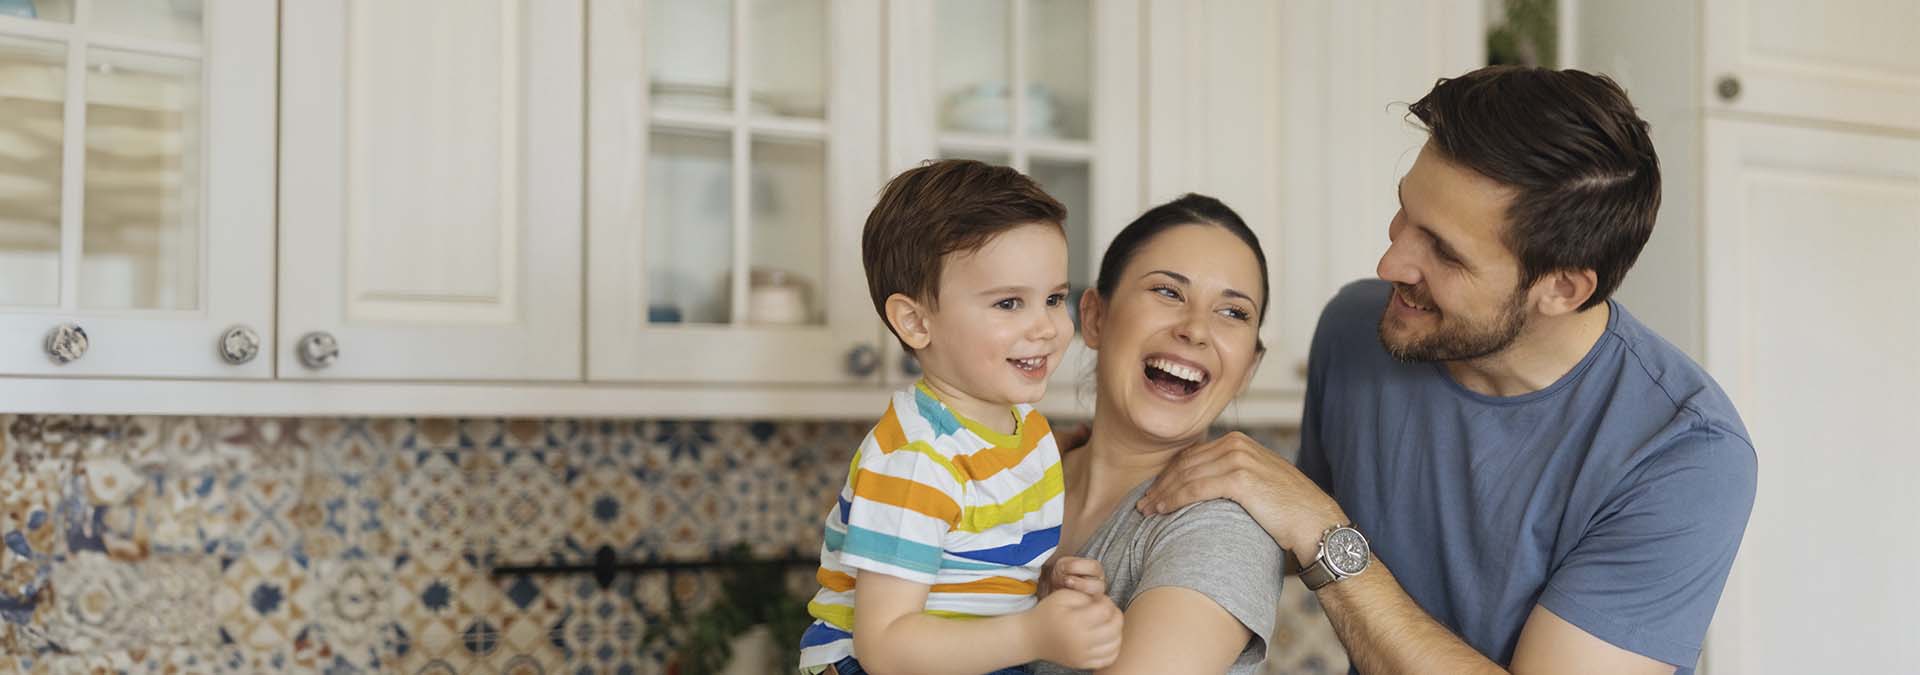 una pareja joven y su hijo sonríen en la cocina